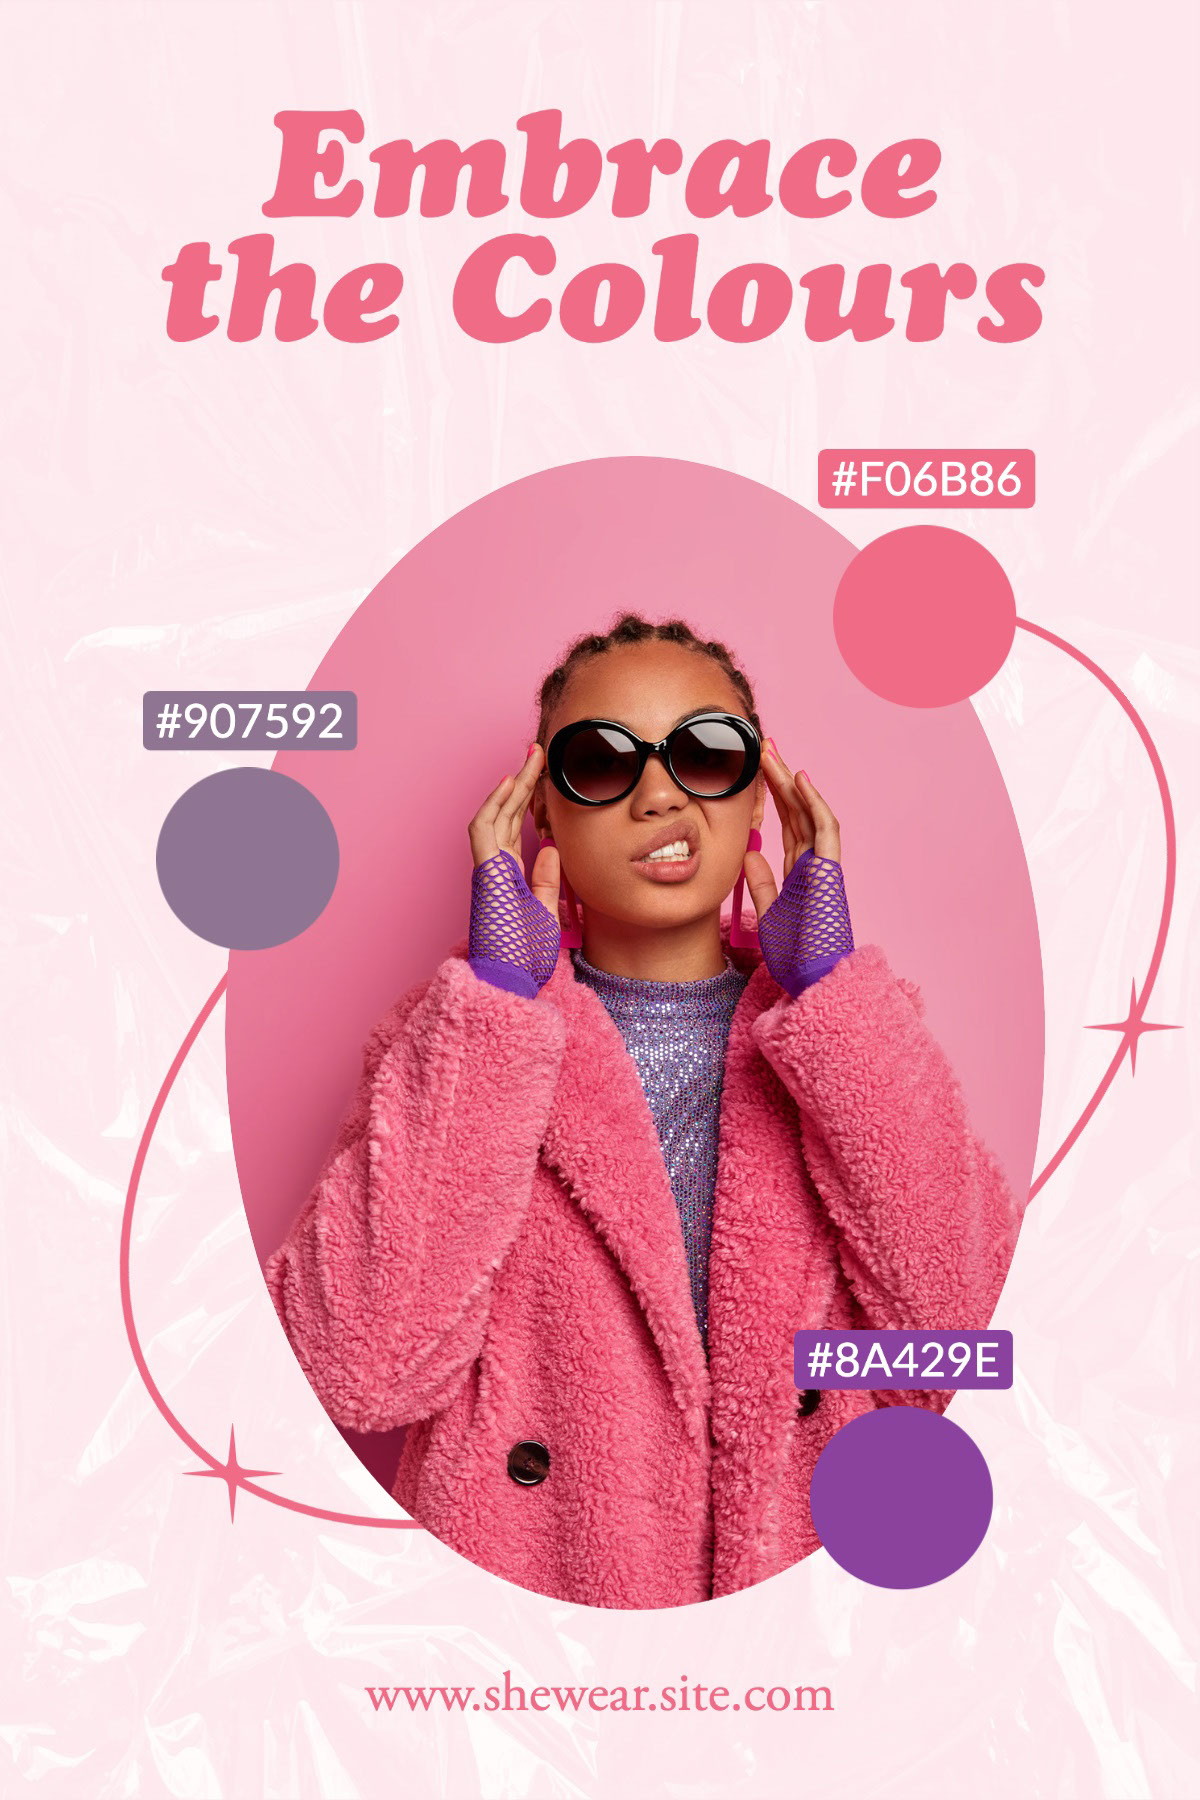 Pink Playful Outfit Colour Palette Pinterest Post Embrace the Colours #8A429E #F06B86 #907592 www.shewear.site.com